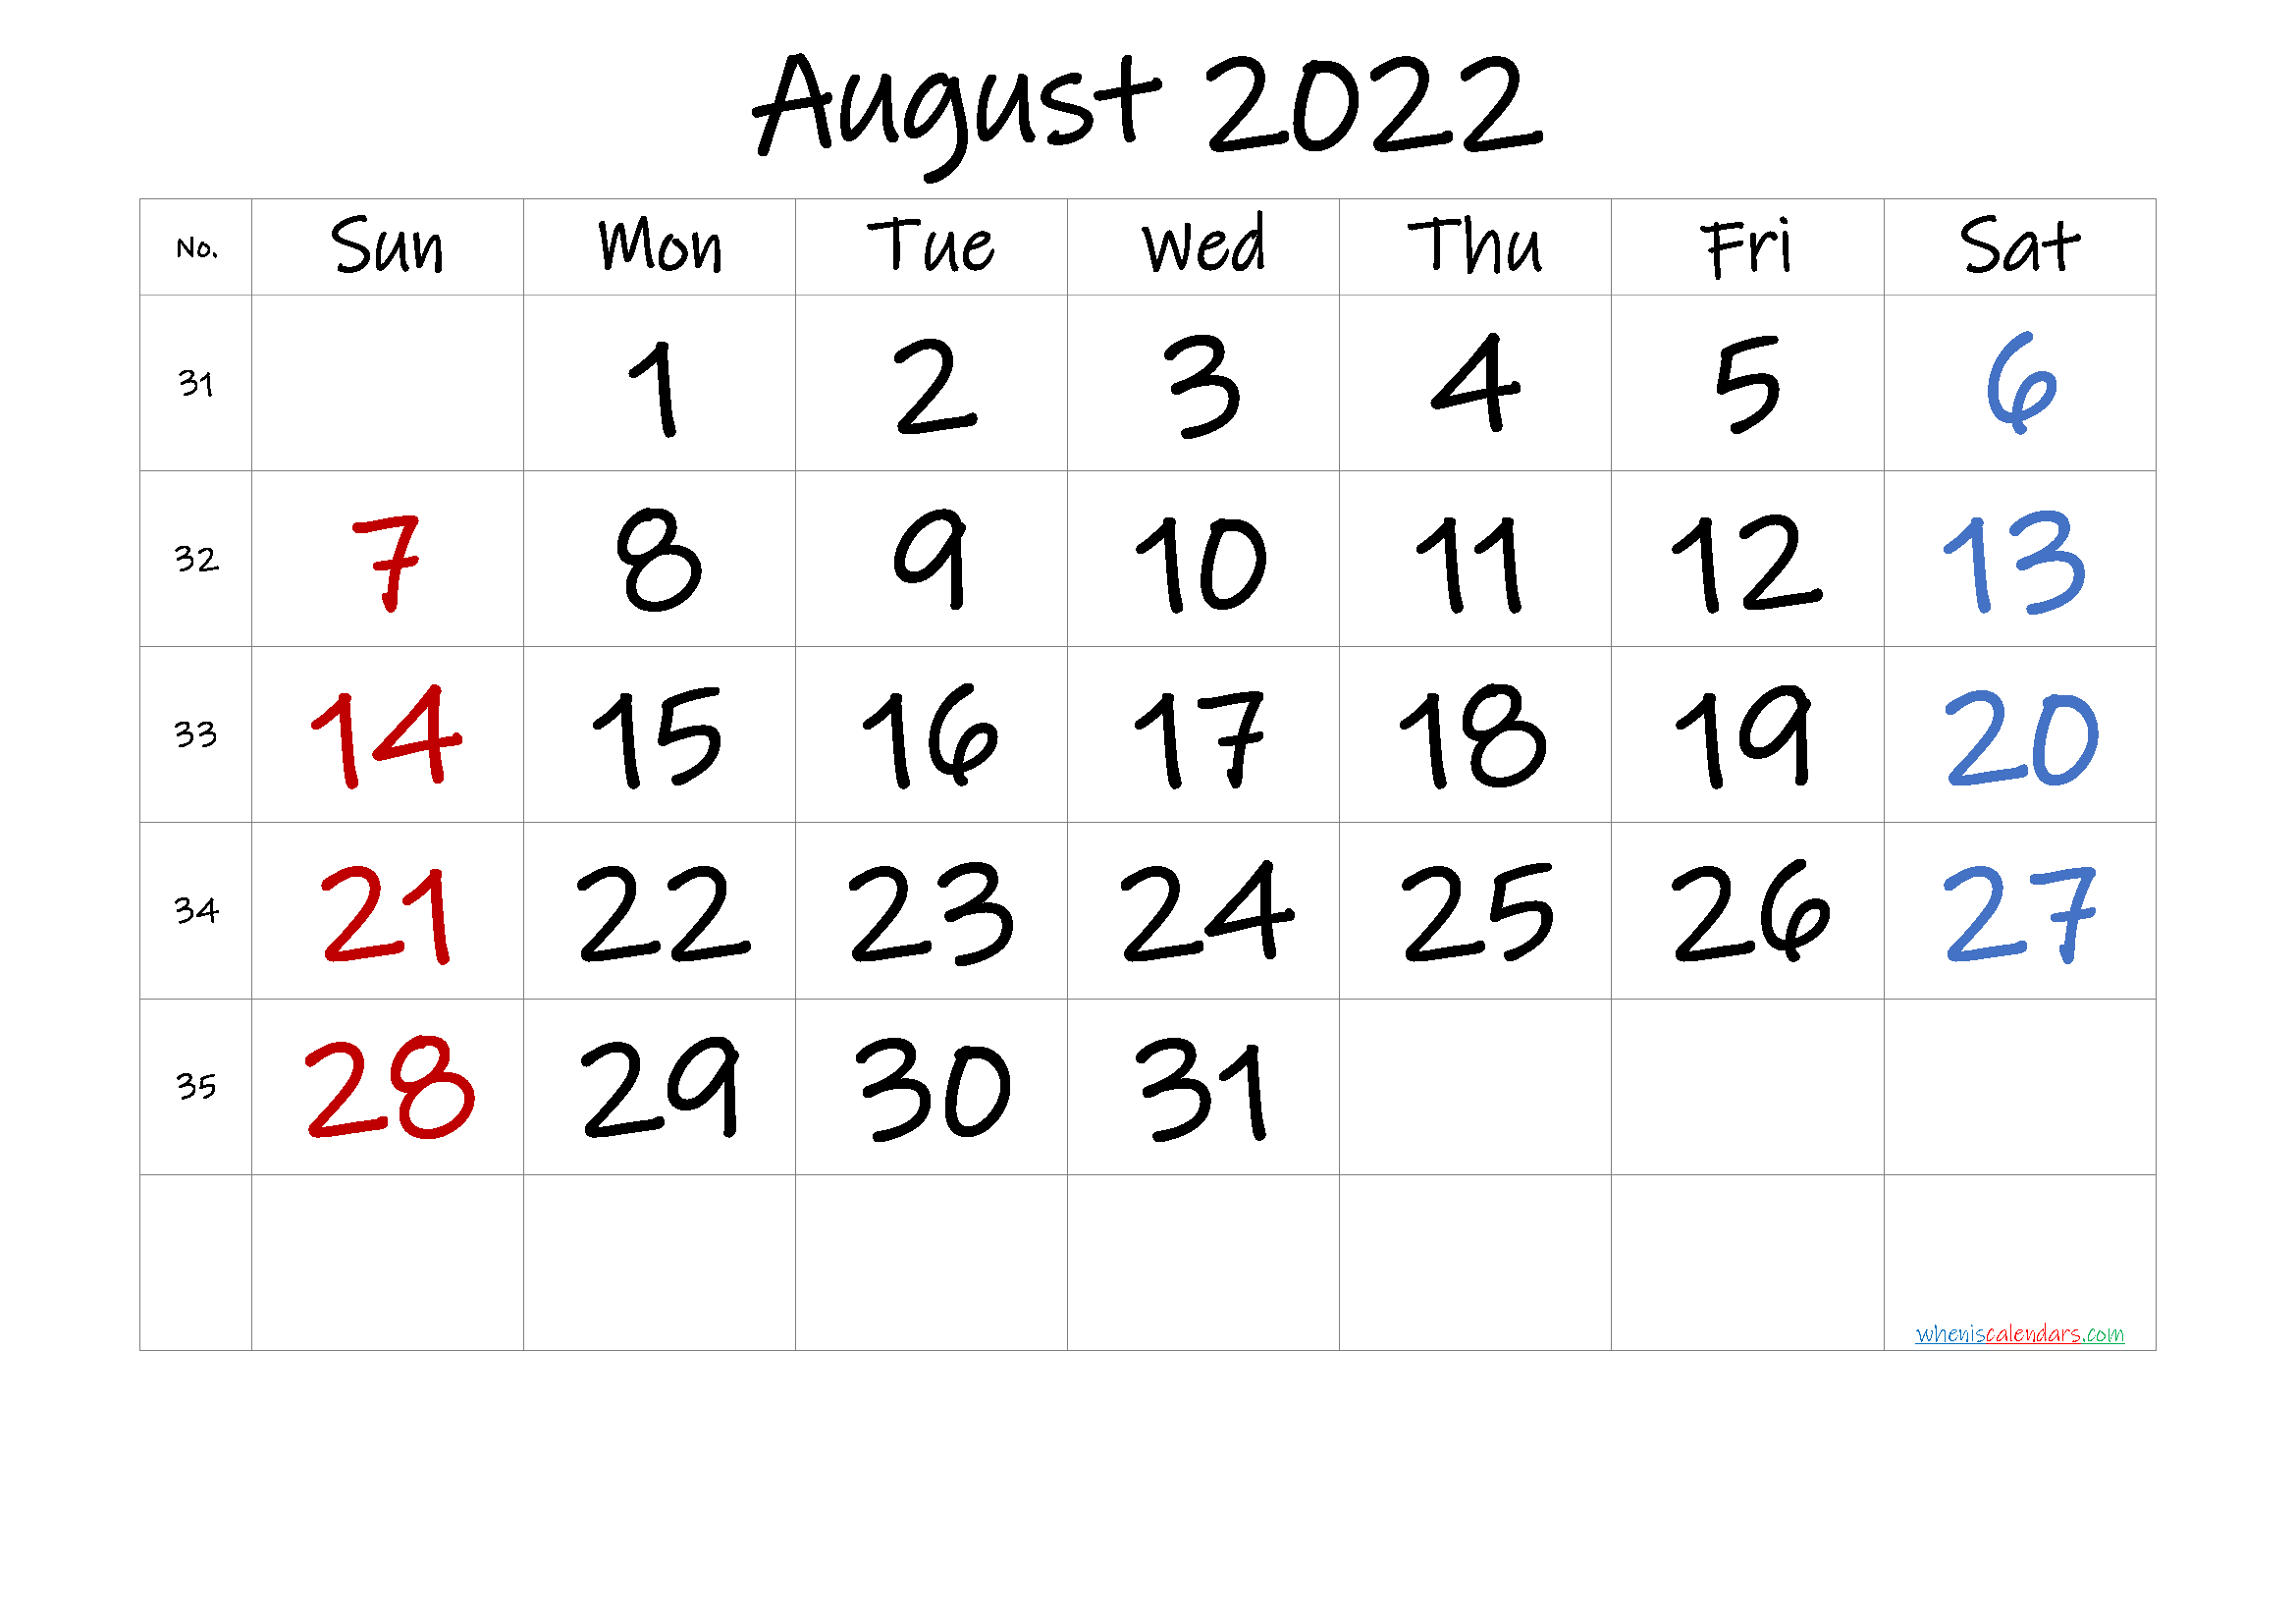 Free August 2022 Calendar With Week Numbers